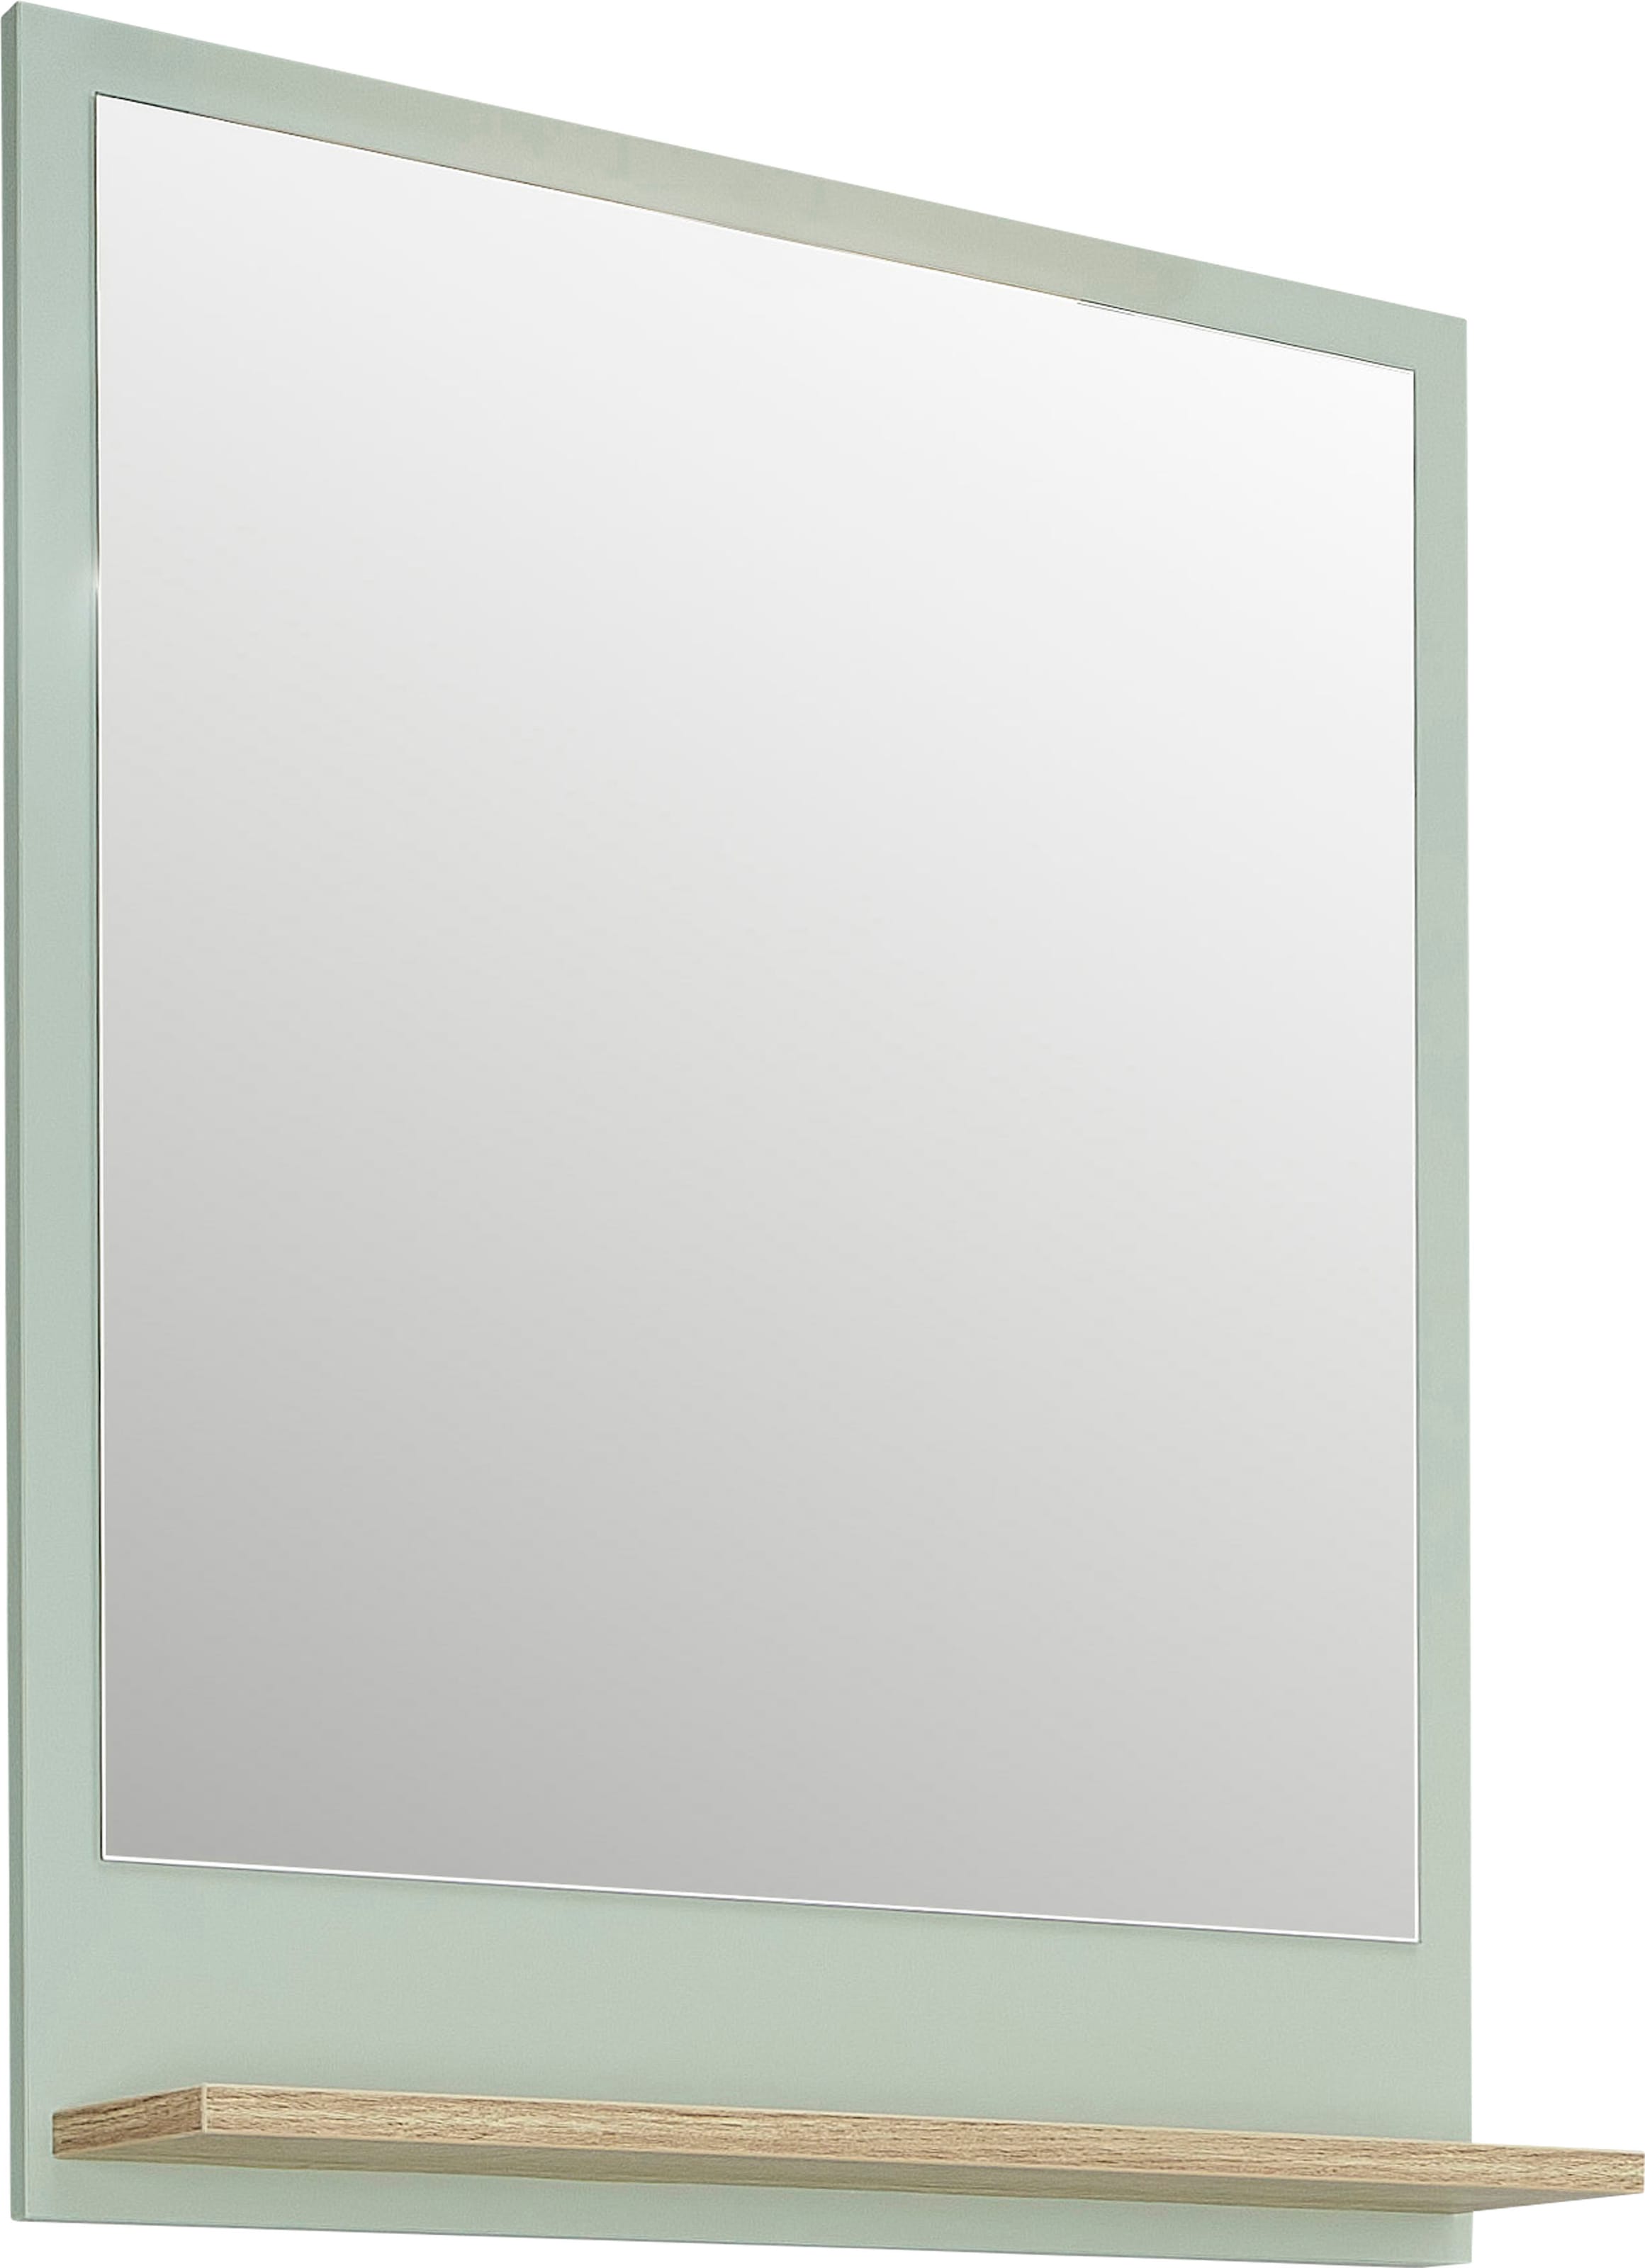 Badspiegel »Quickset 963 Spiegel mit Ablage, 60 cm breit, 74,5 cm hoch«,...